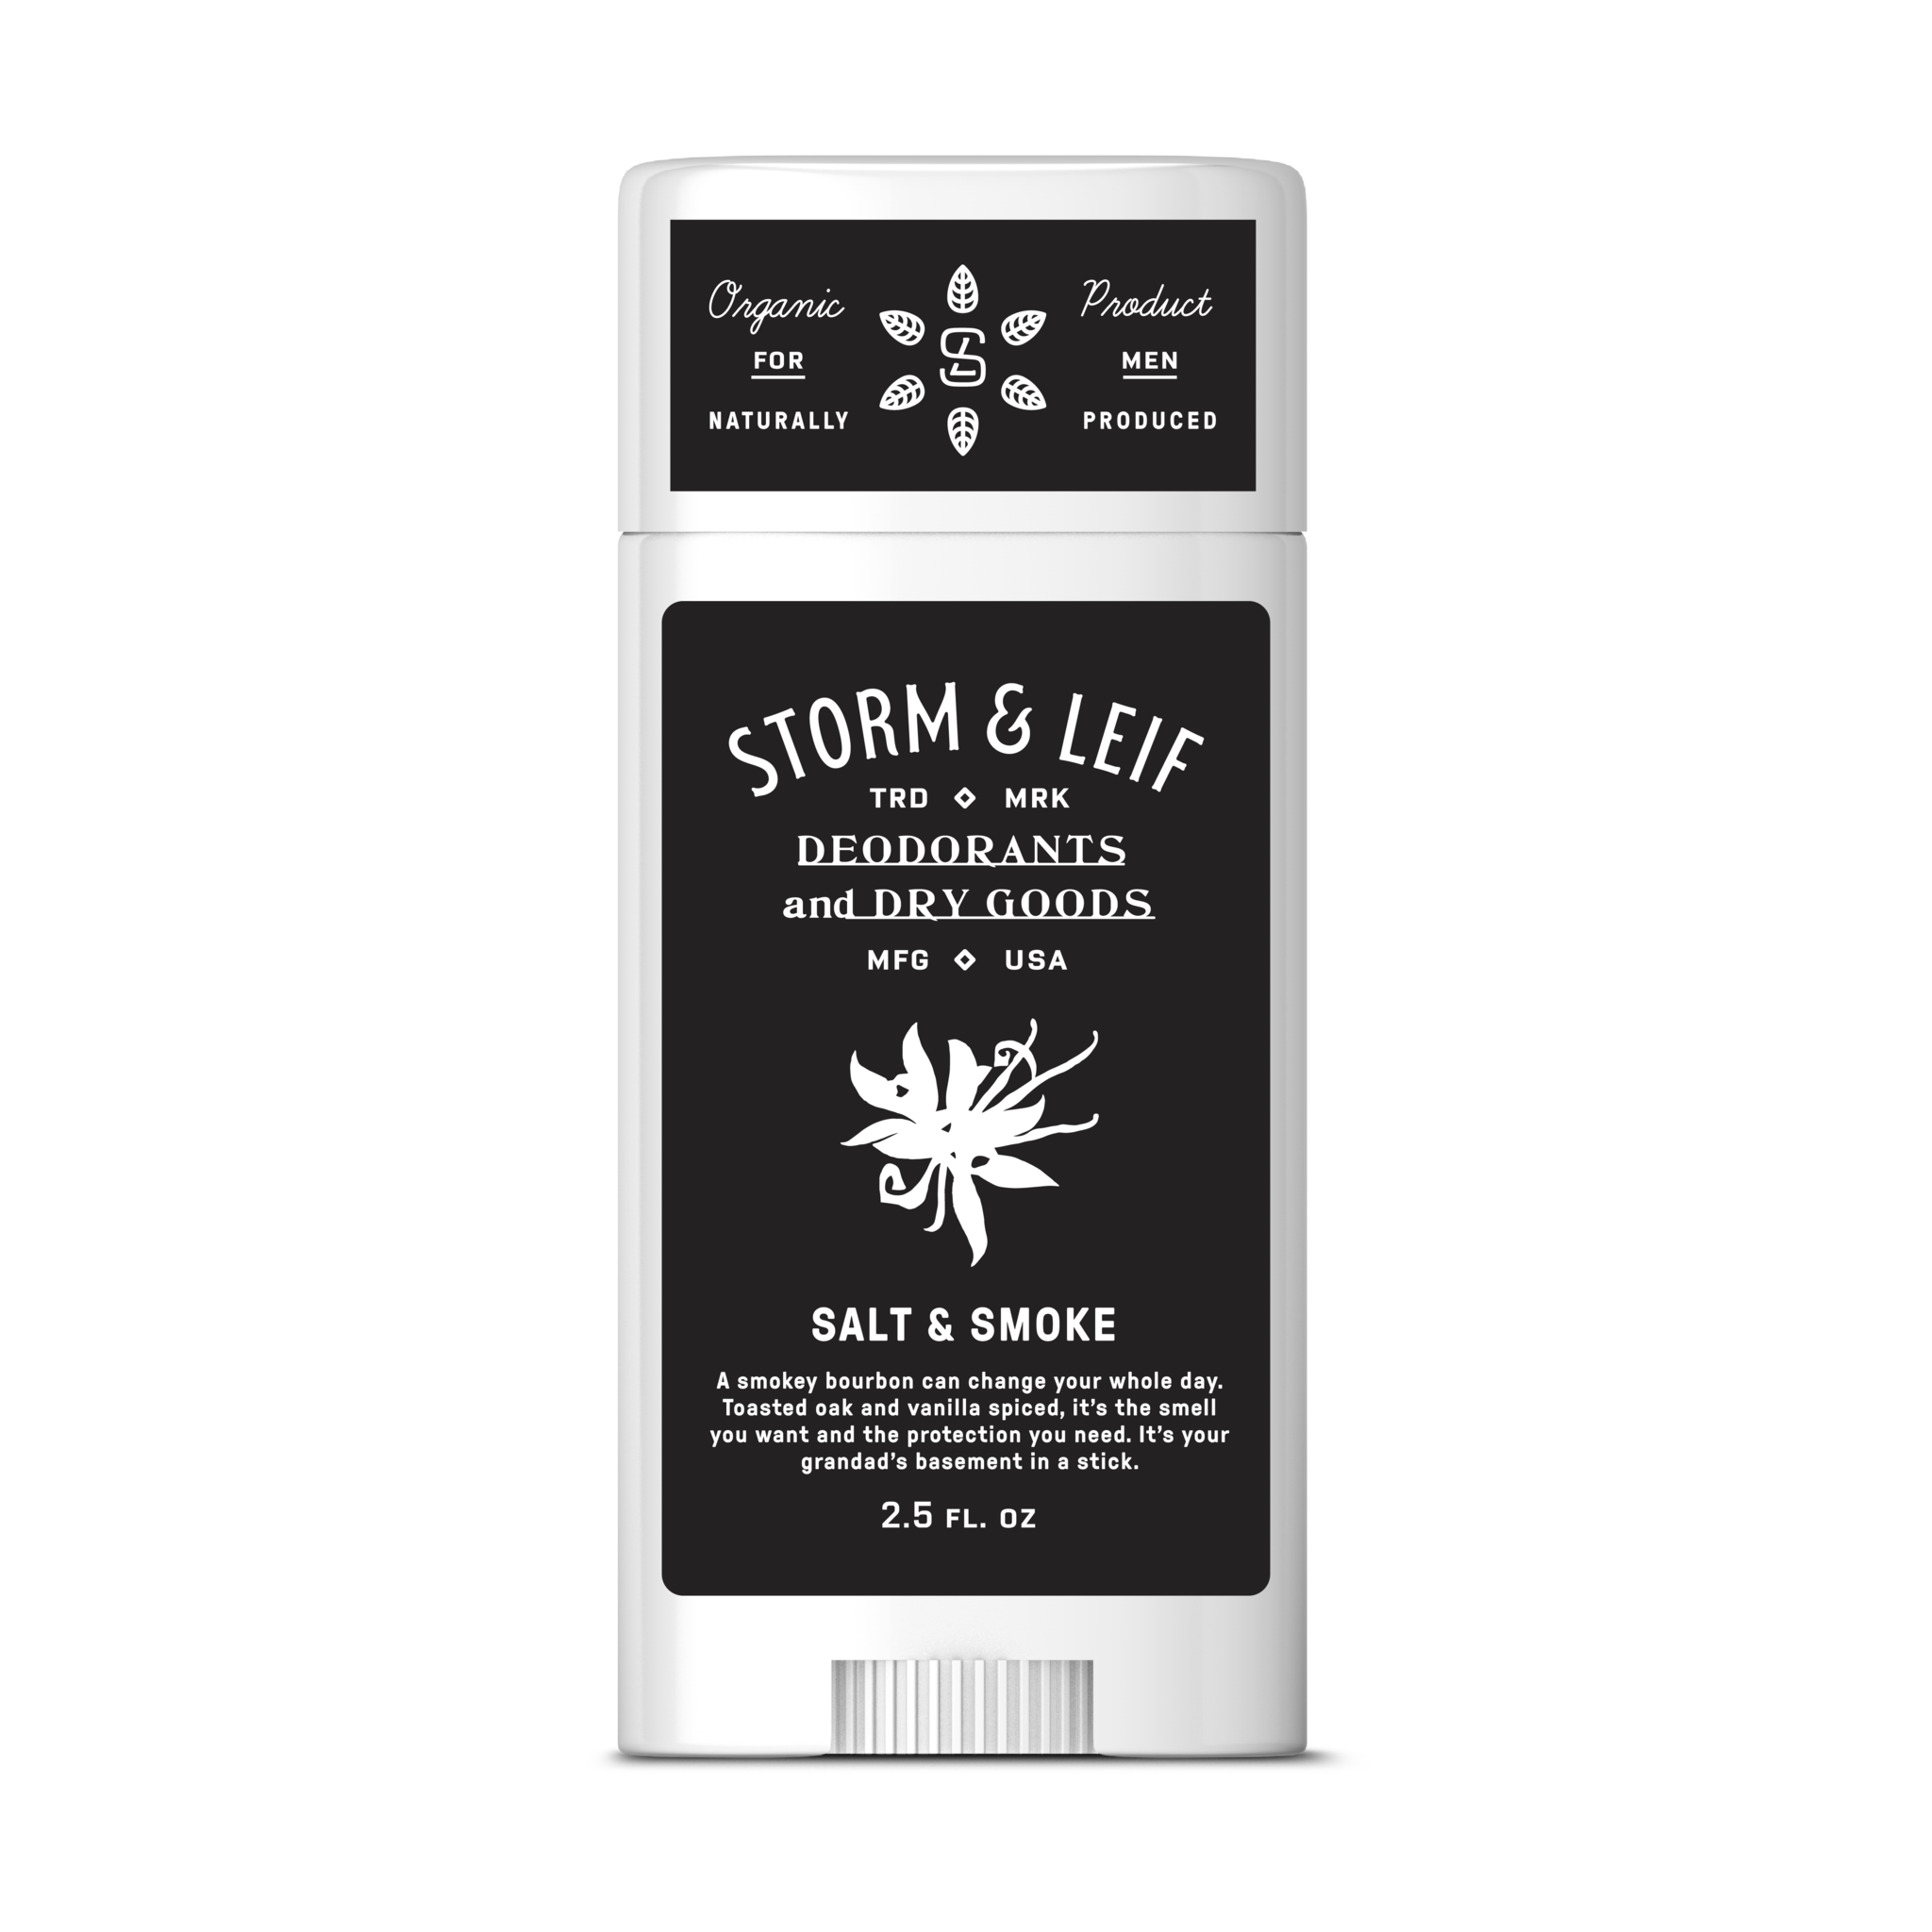 Salt & Smoke vegan natural deodorant for men.